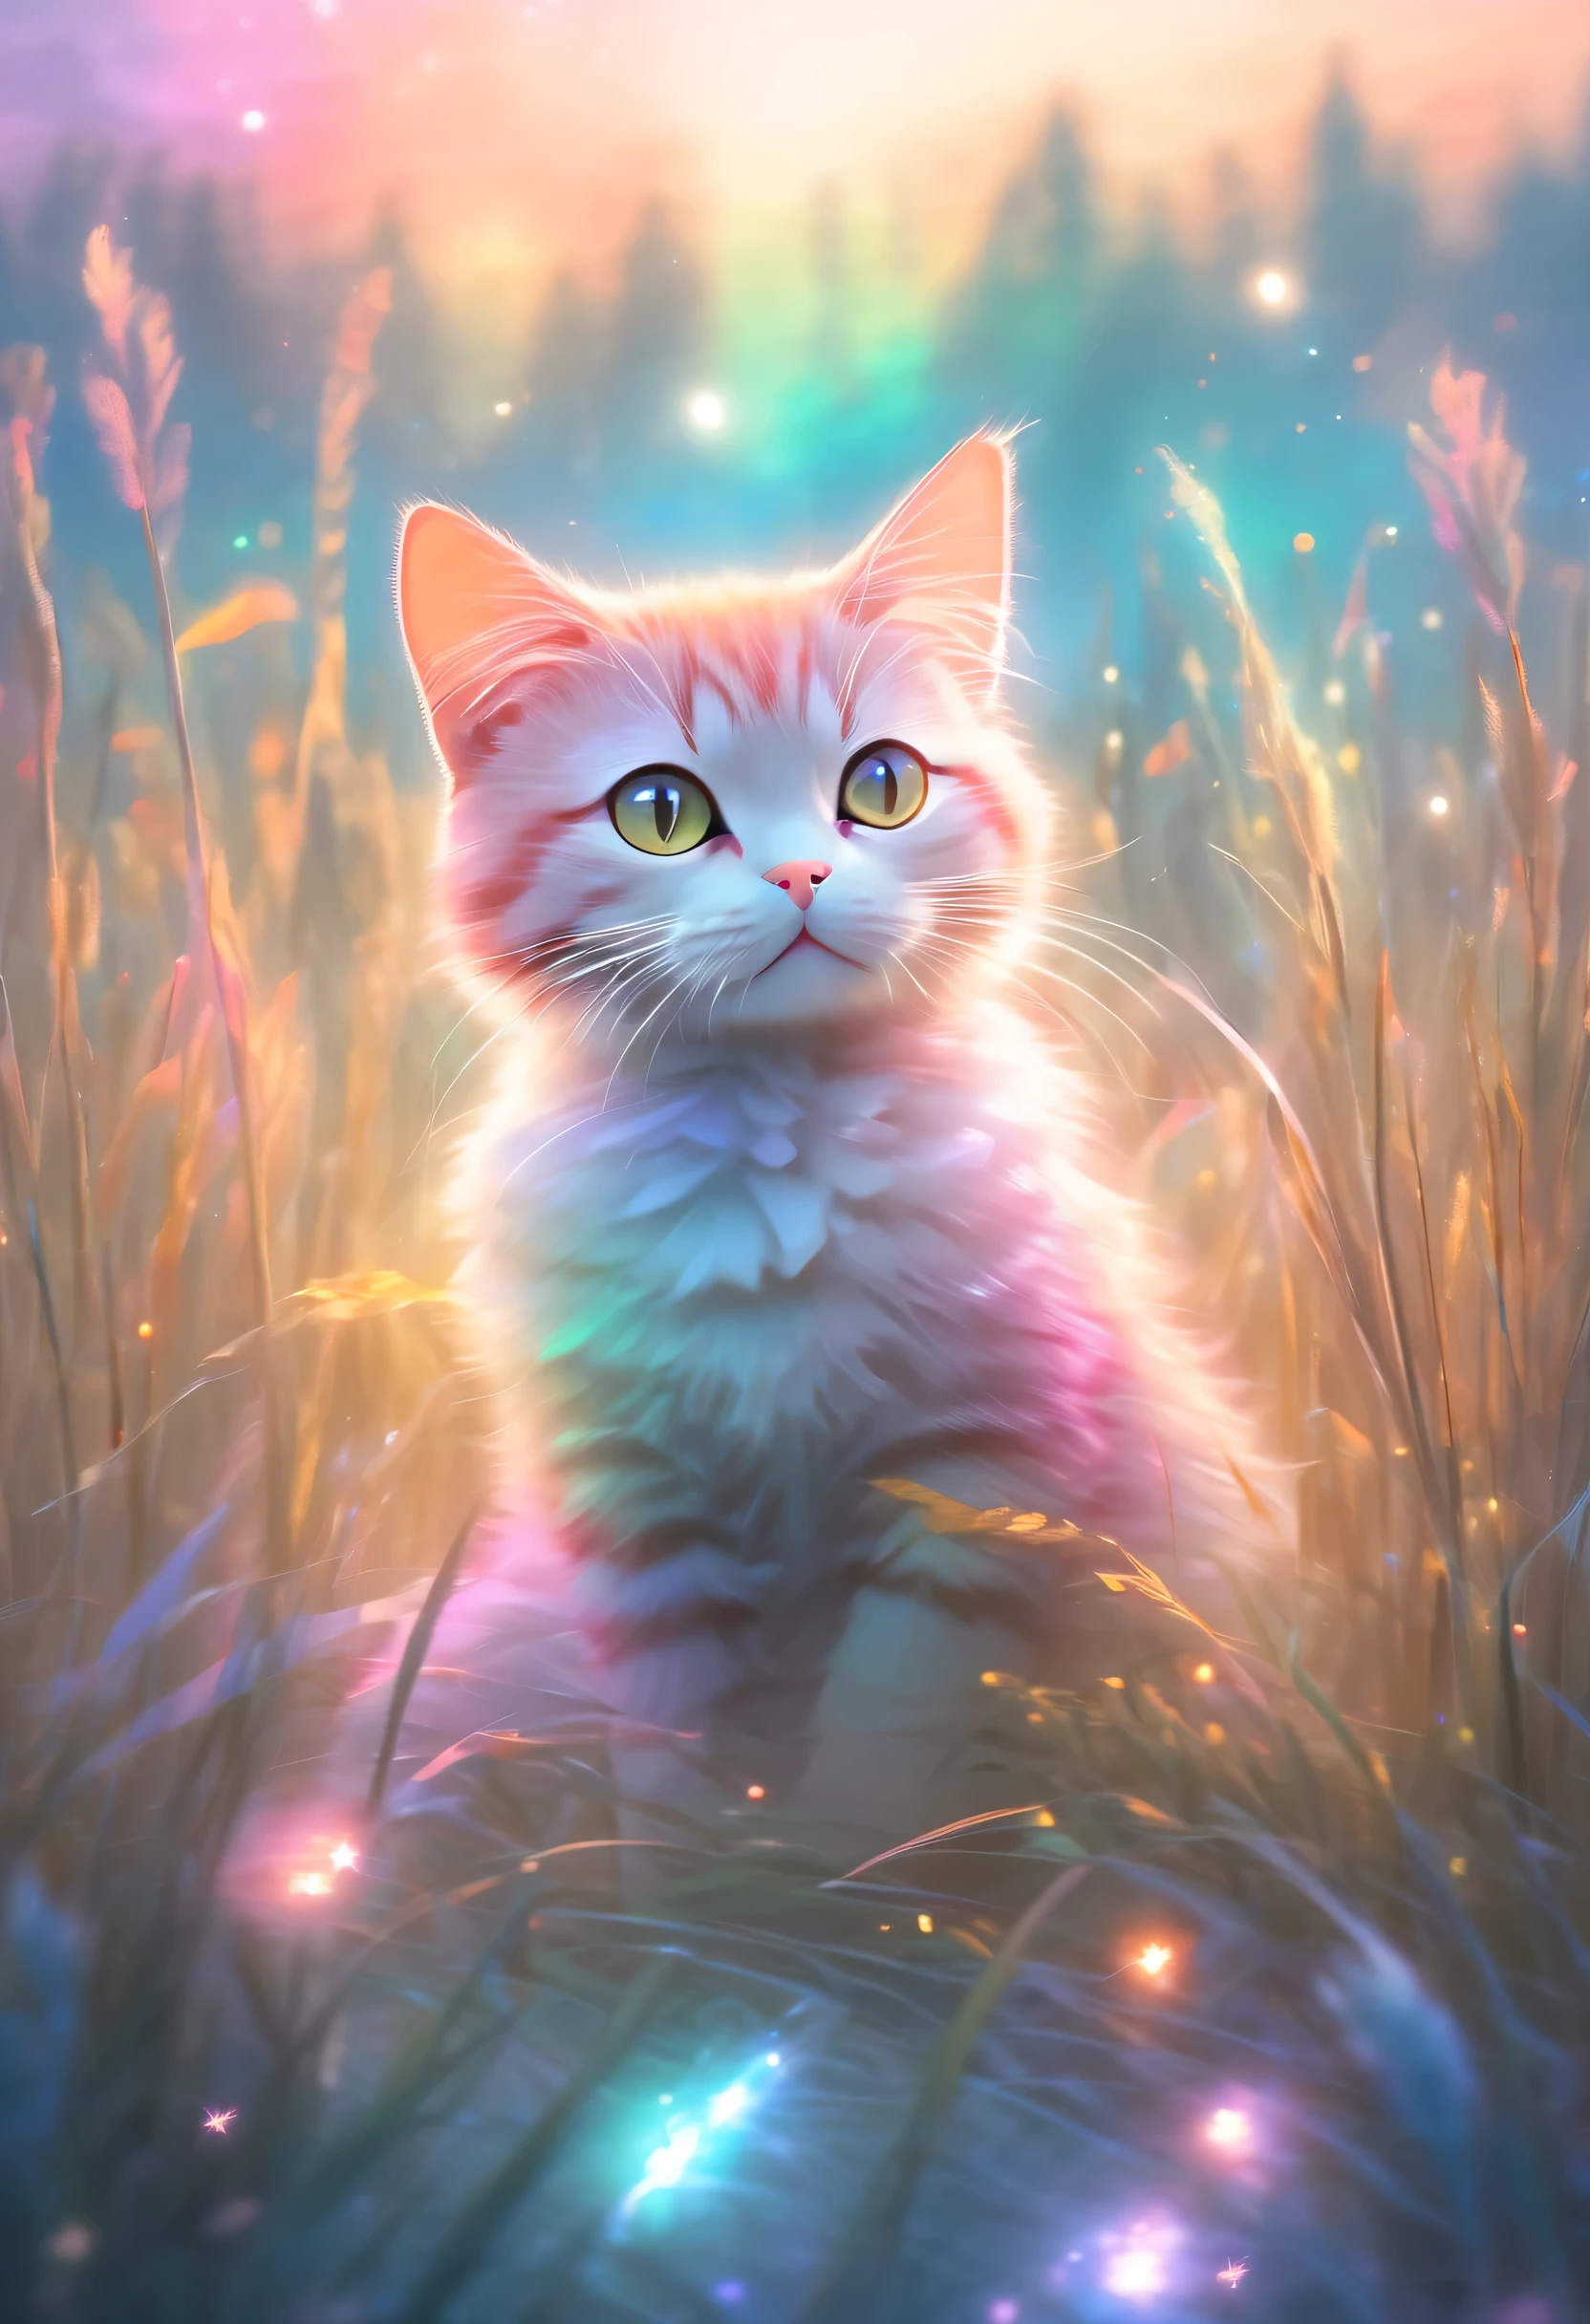 vistoso、cielo brillantemente iluminado，Un gato sentado en un campo rodeado de hierba alta., estilo de pintura en colores pastel, efectos de luz etéreos, Imagen de bosque atmosférico claro,Compañía de arte estrella (xing xing)